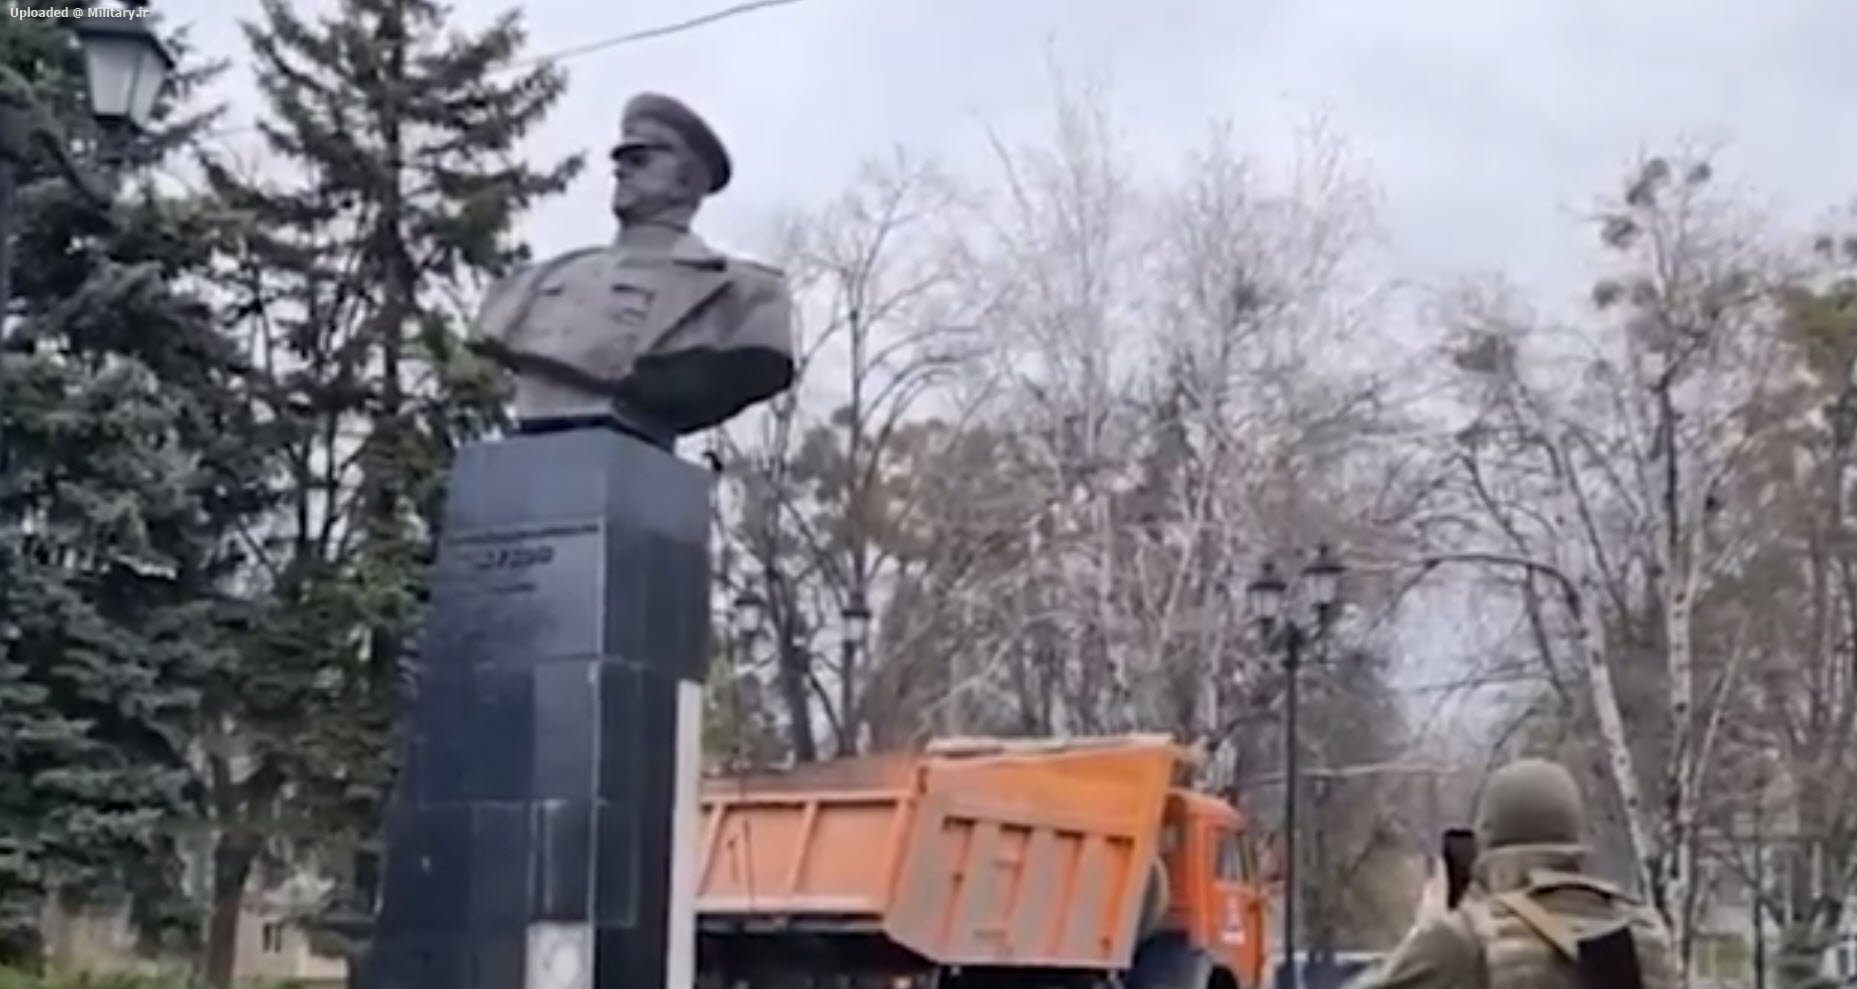 Marshal_Zhukov_monument_in_Kharkov_being